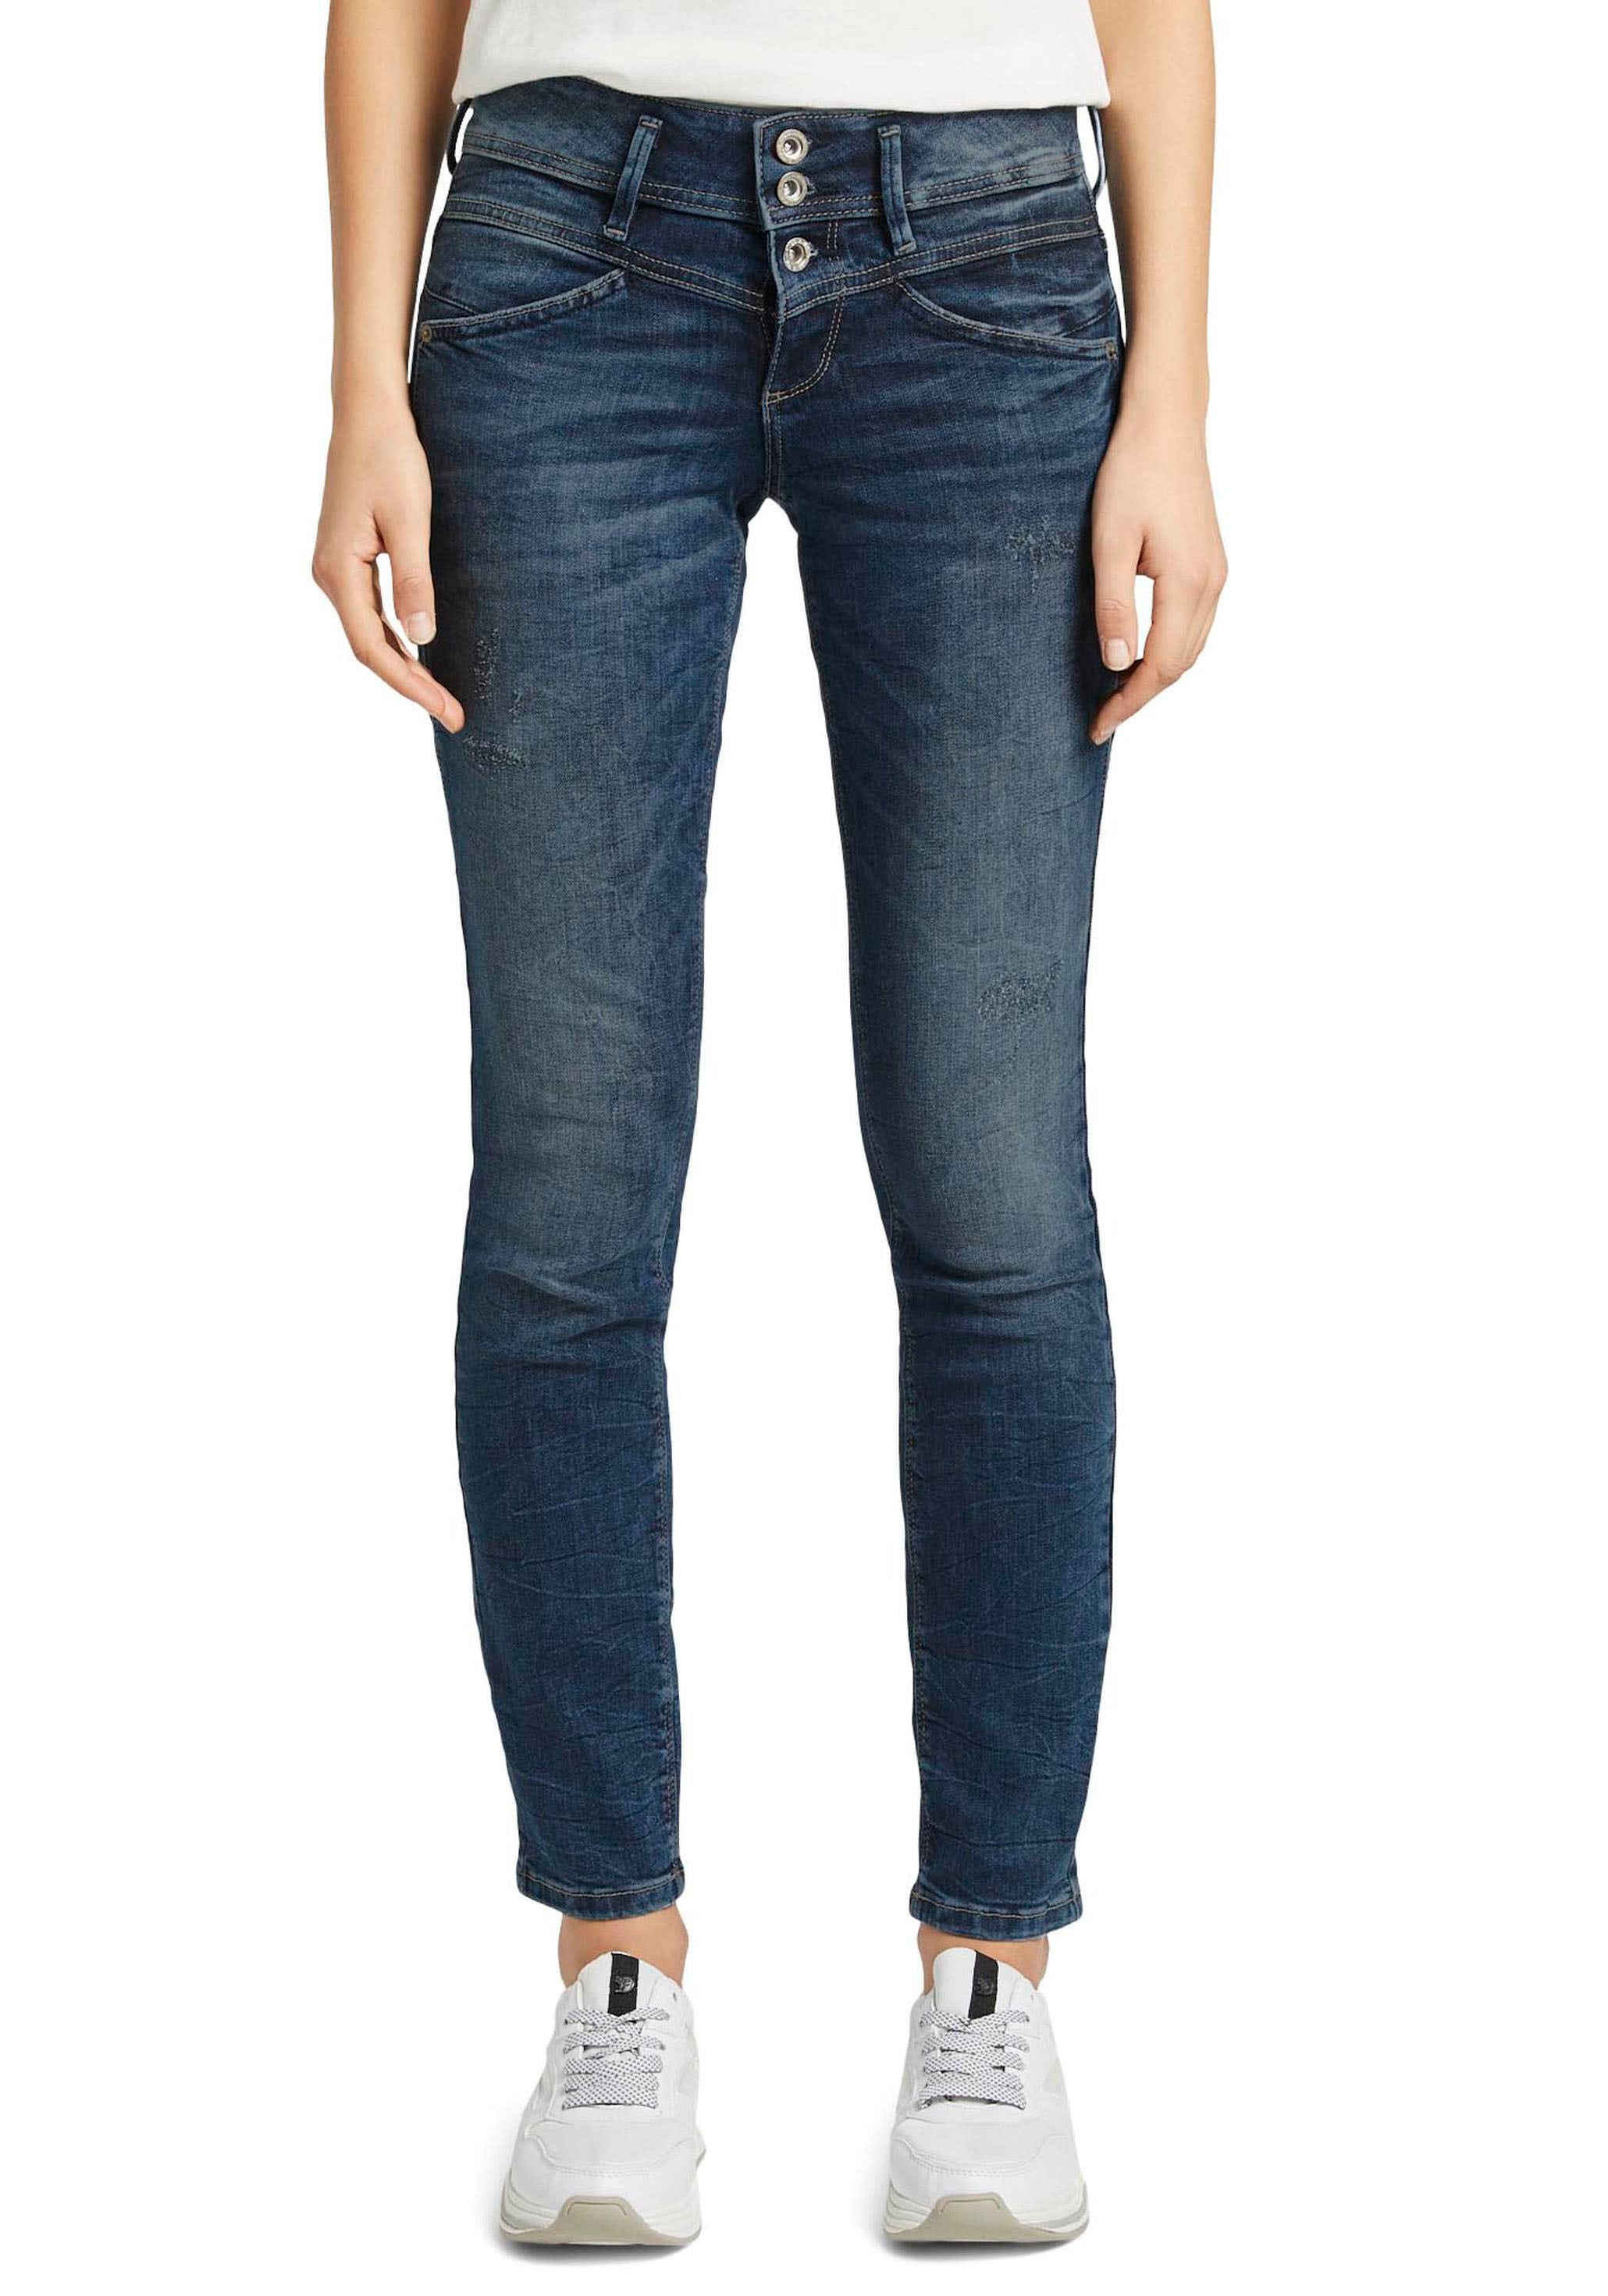 Jeans Damen große kaufen jetzt online Größen